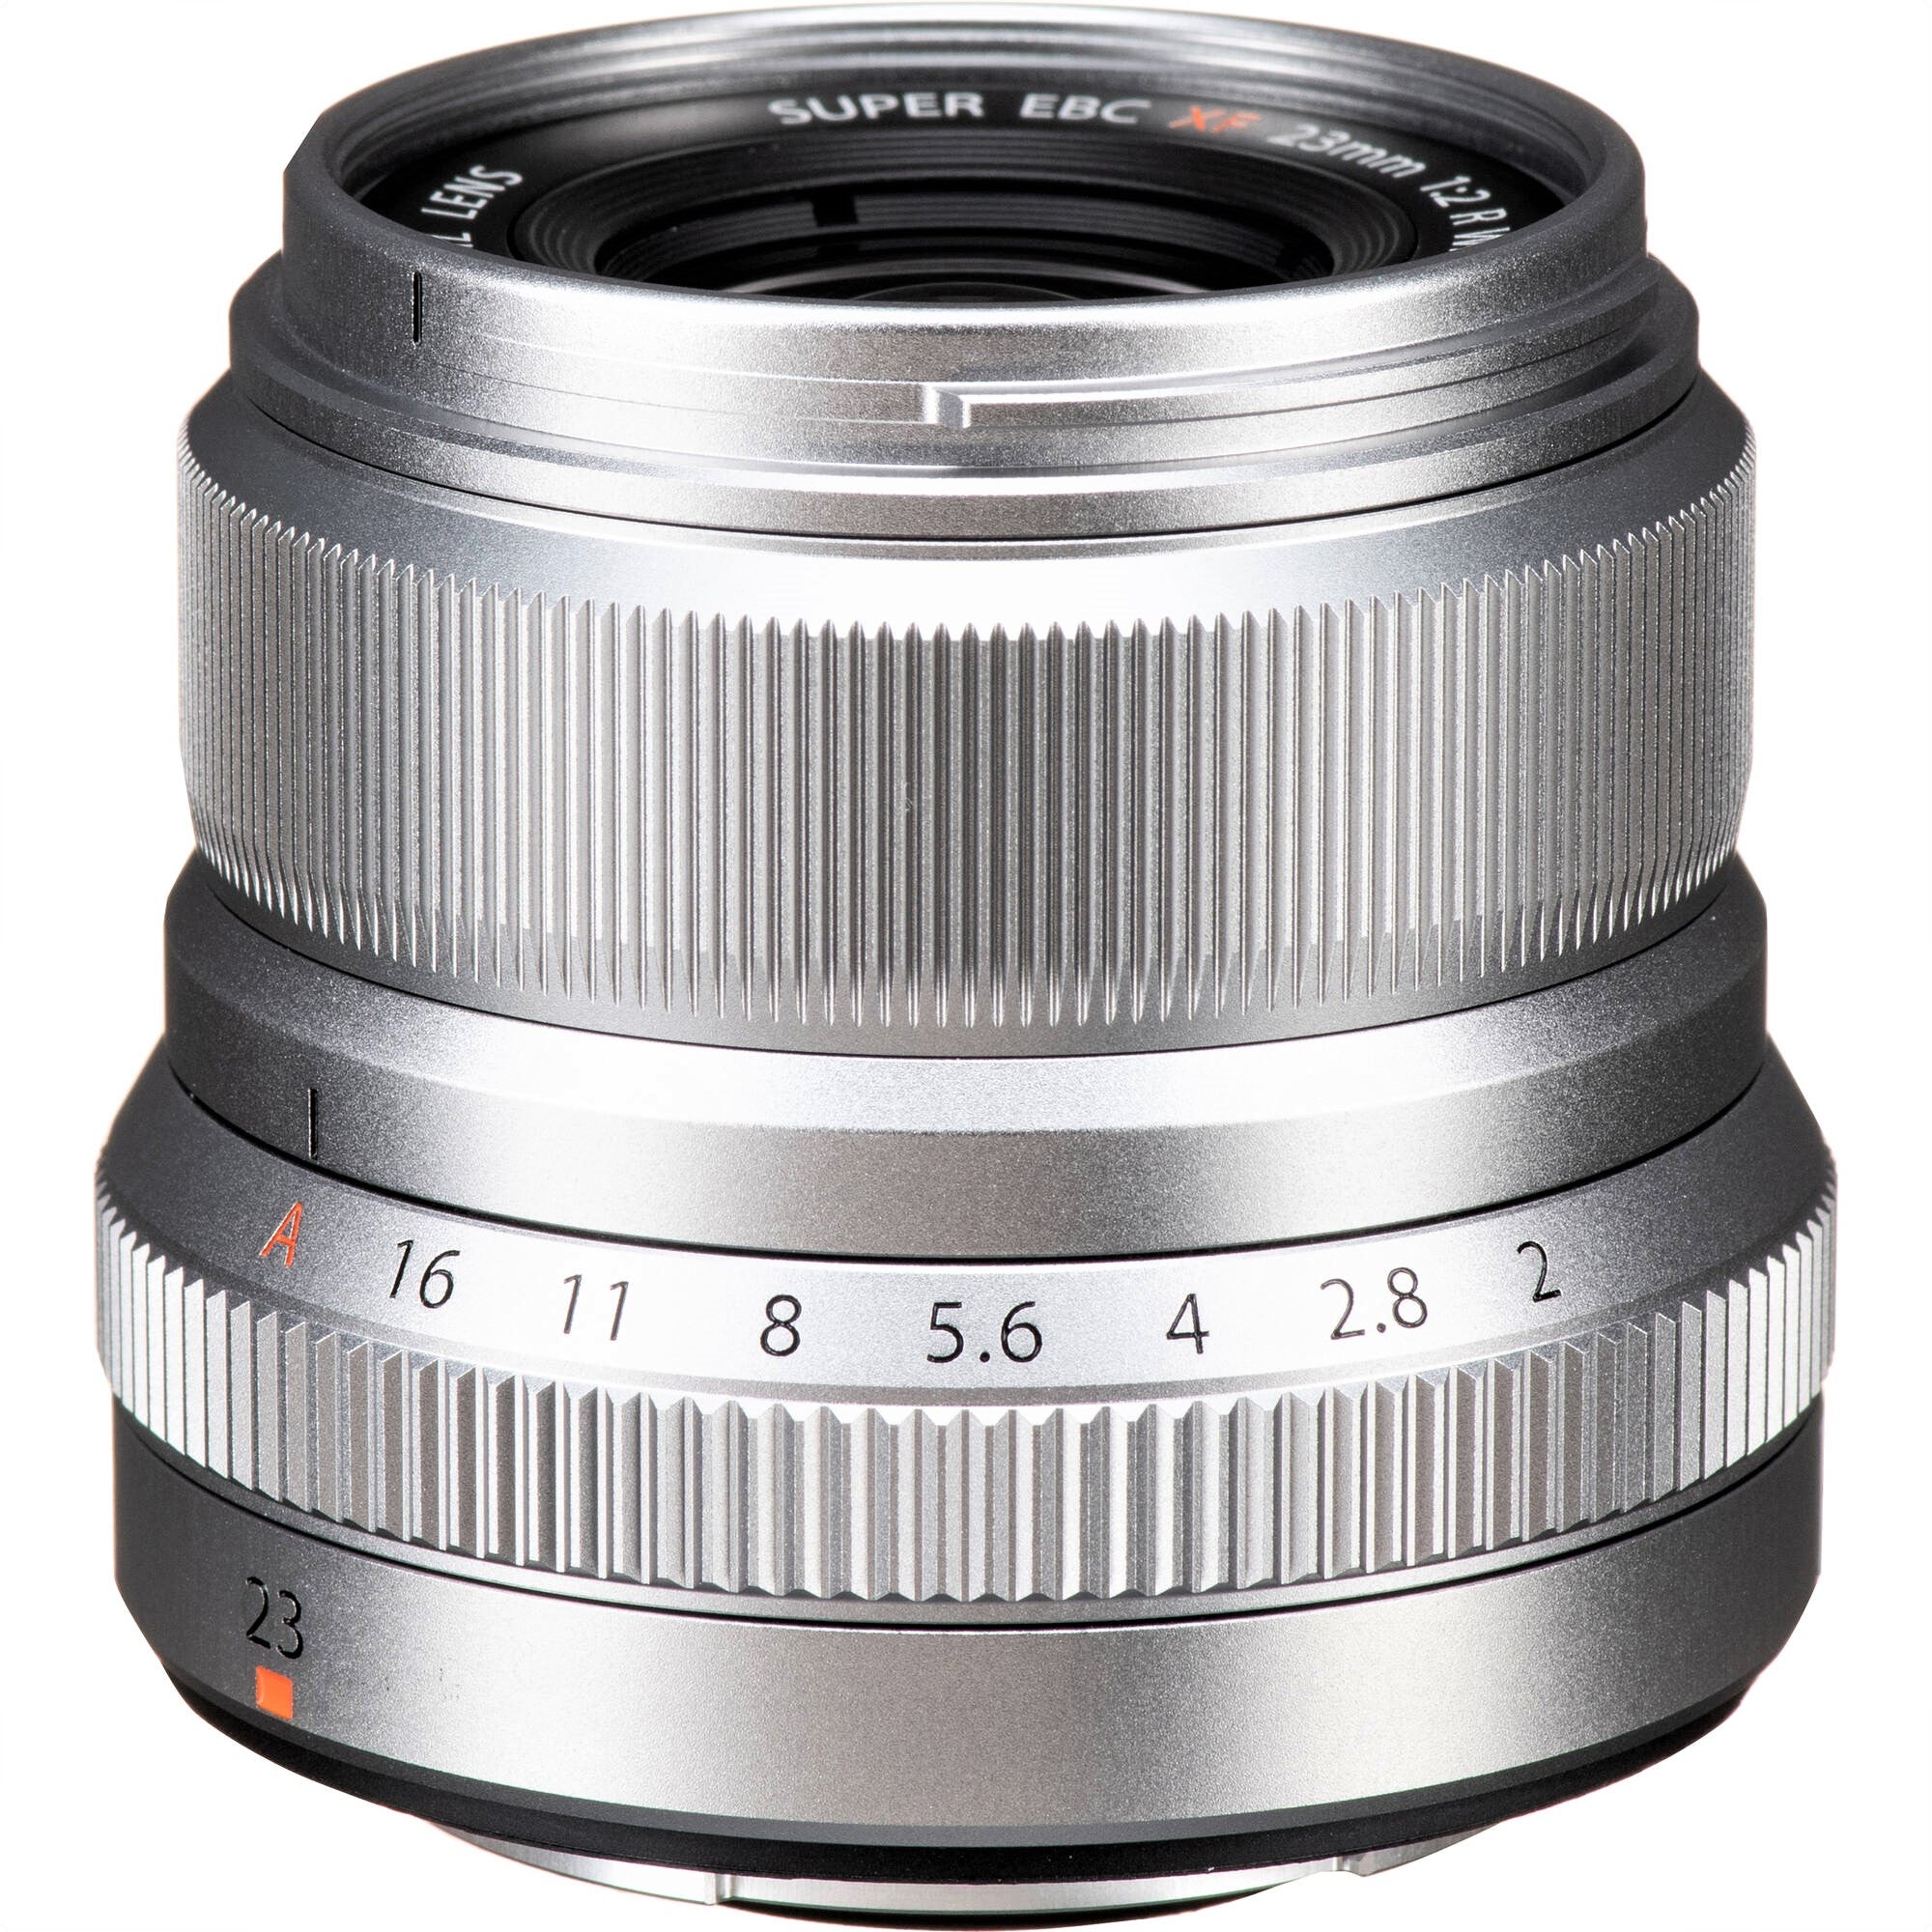 FUJIFILM XF 23mm F2 R WR Lens (Silver)